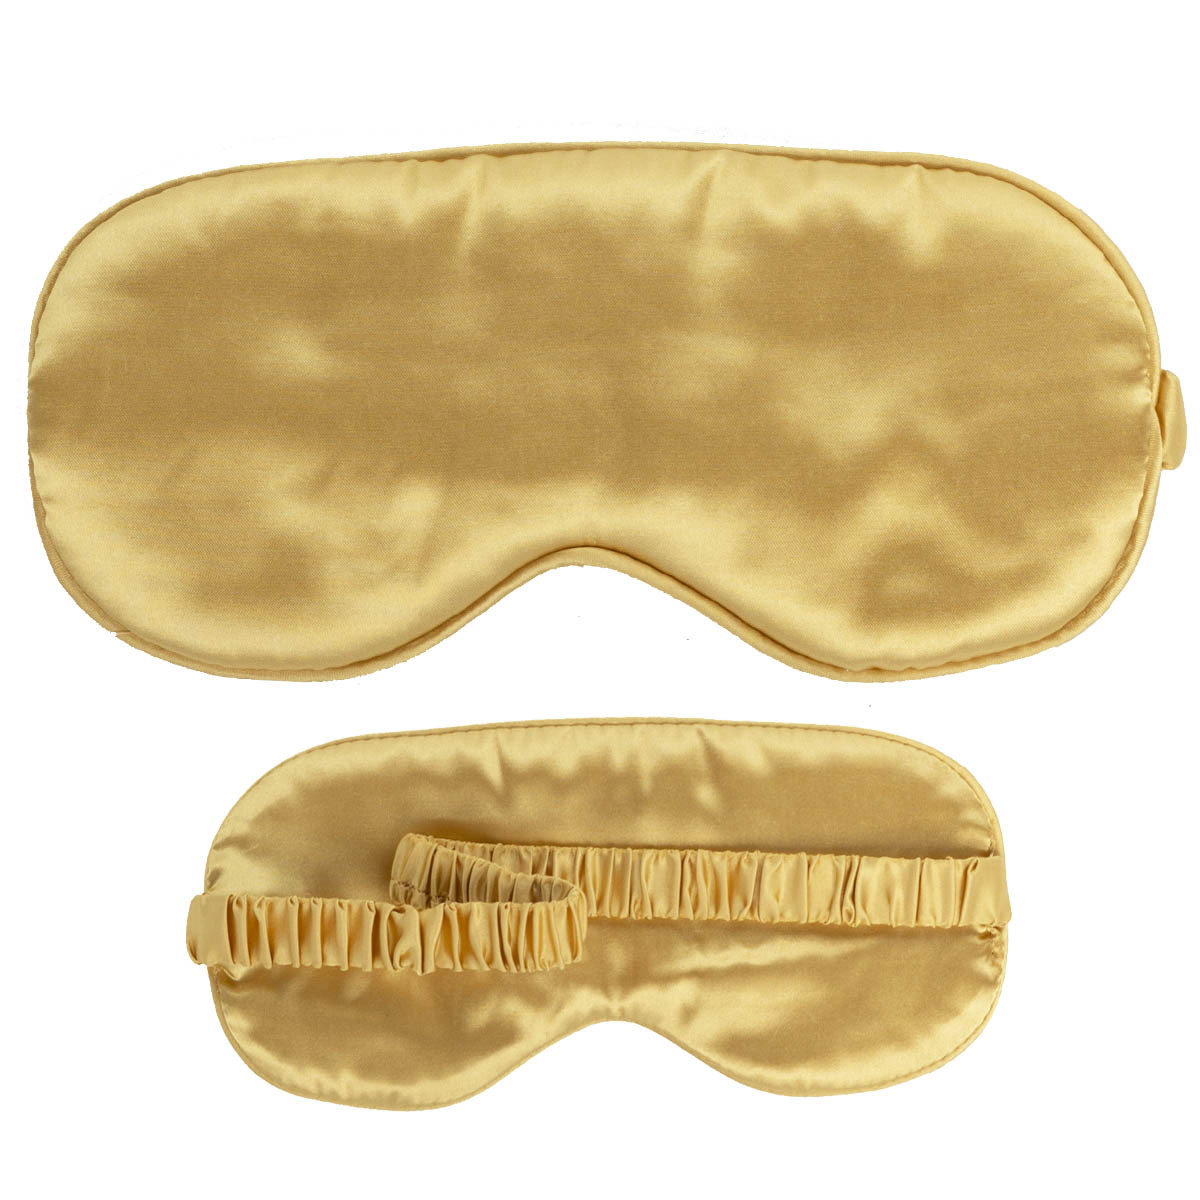 Slaapmasker goud luxe voorkant en achterkant